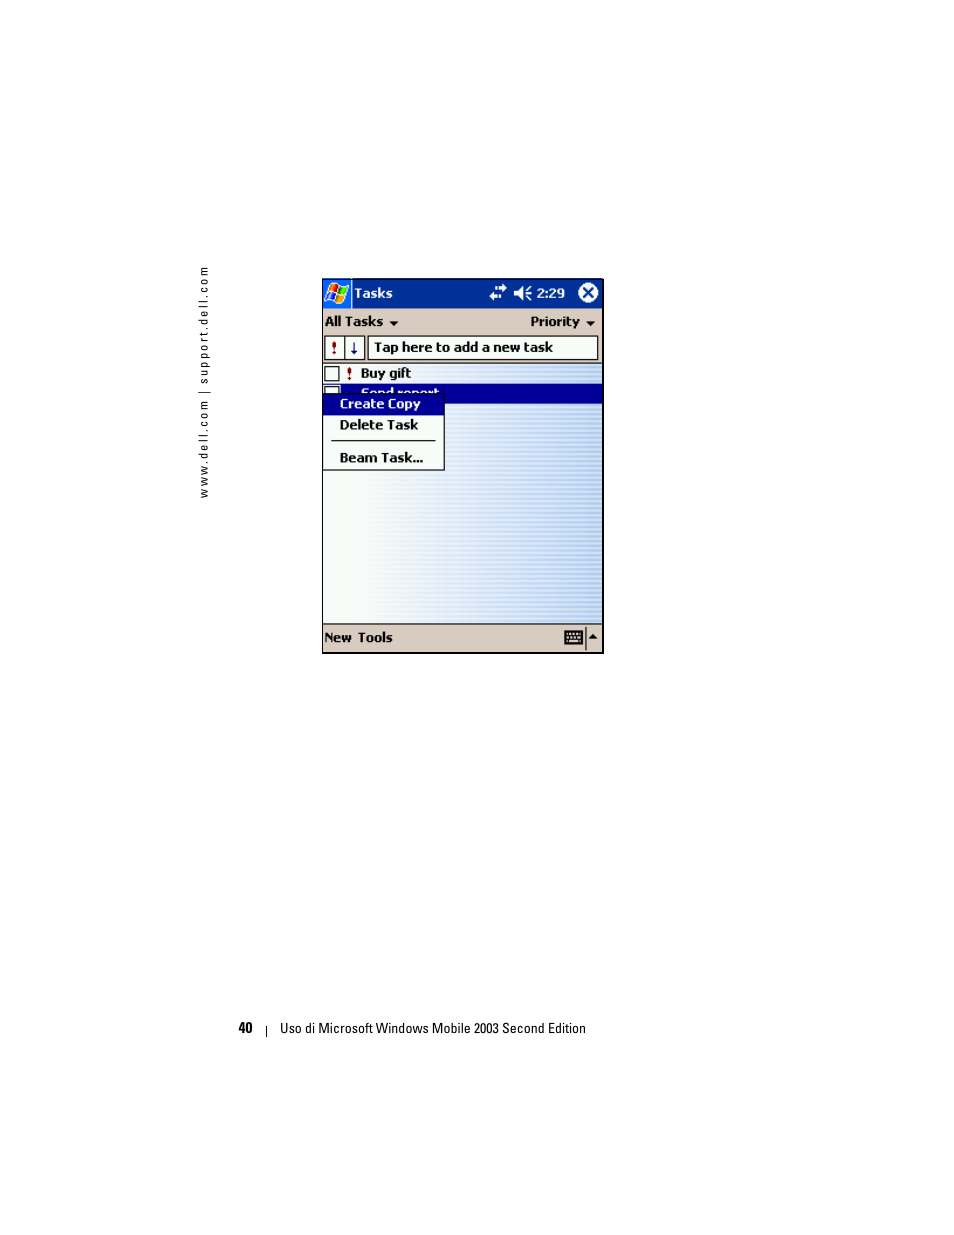 Dell Axim X50 Manuale d'uso | Pagina 40 / 148